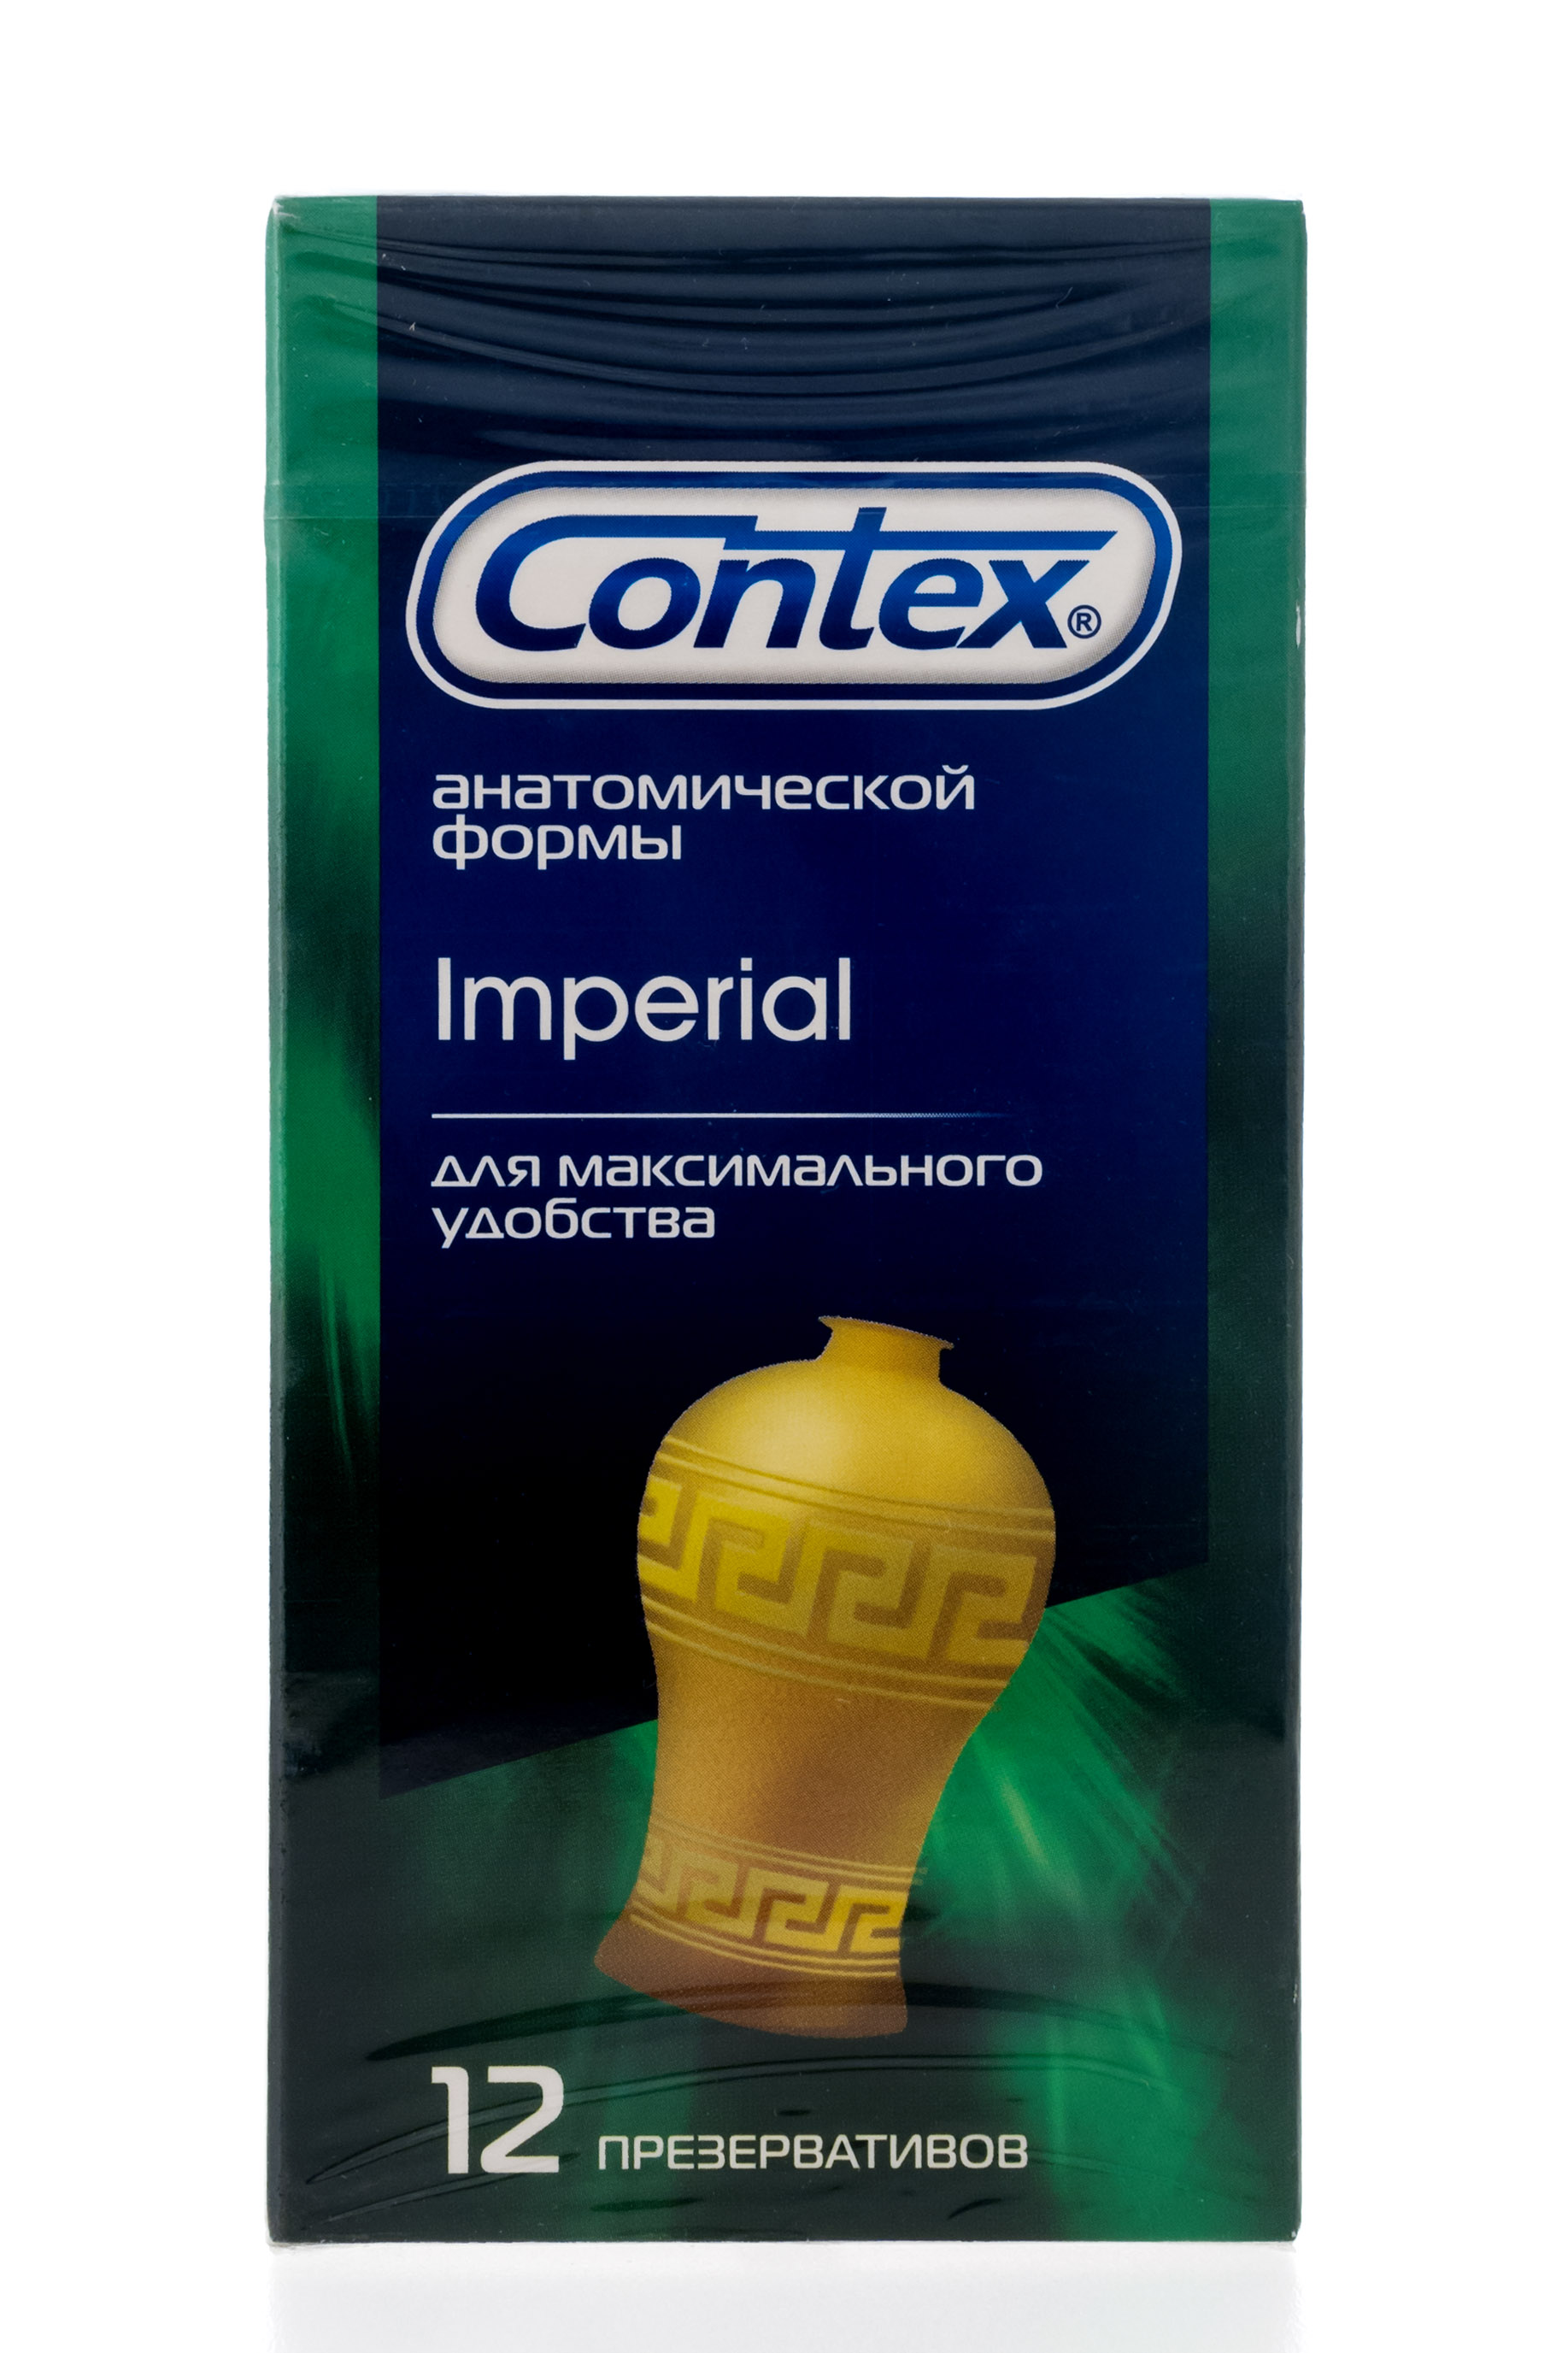 Contex Презервативы Imperial №12 (Contex, Презервативы)